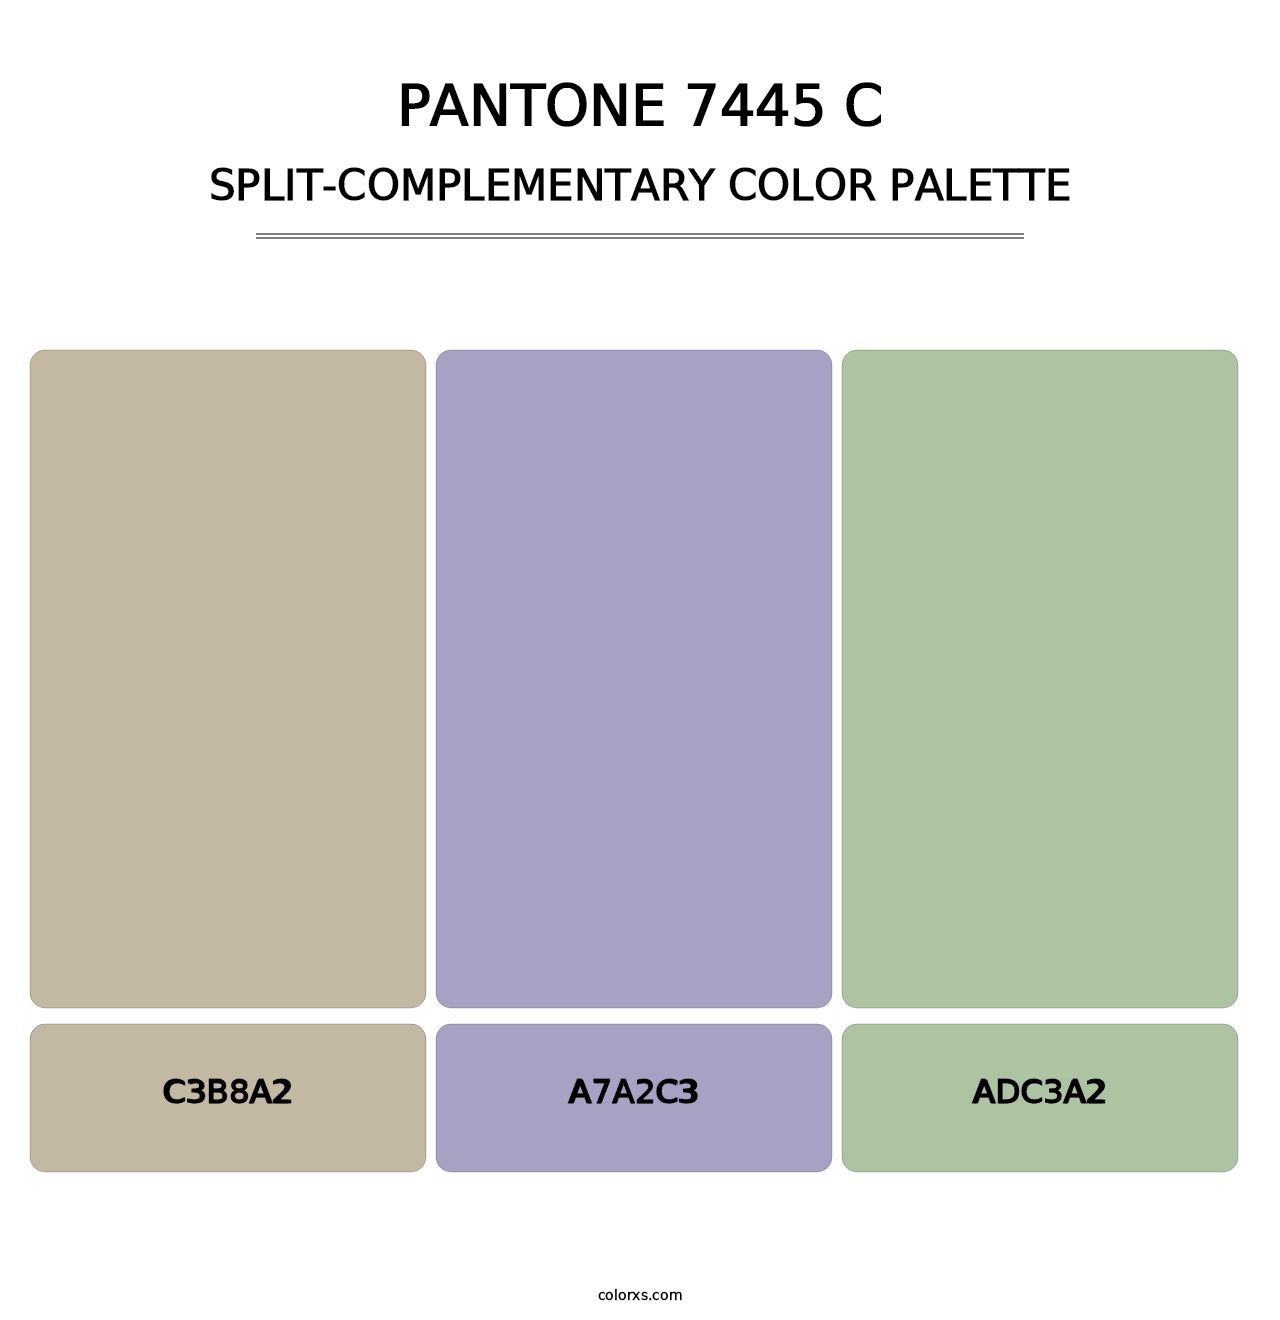 PANTONE 7445 C - Split-Complementary Color Palette